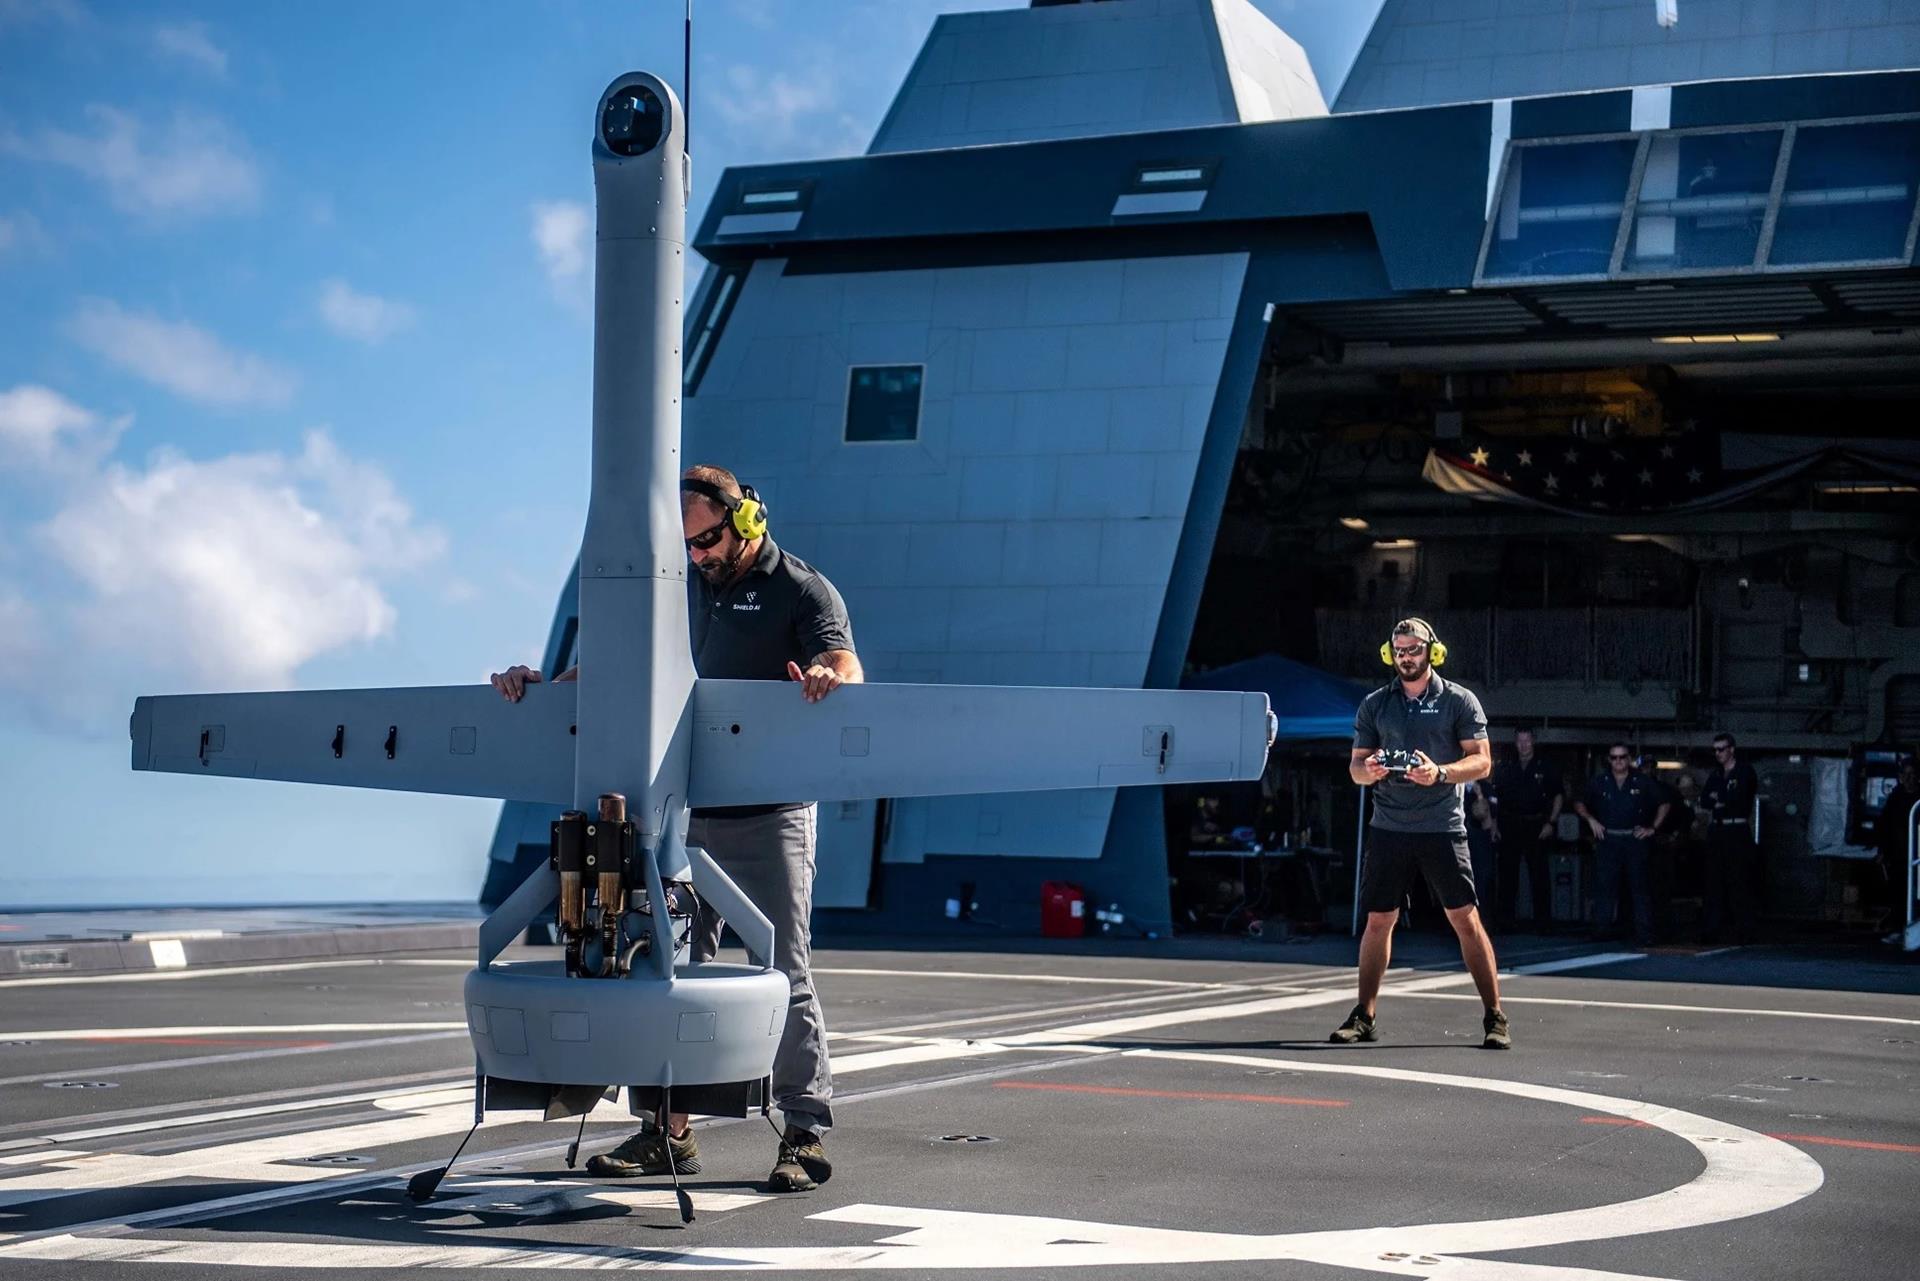 wojskowe drony sięgną tam, gdzie nie sięgnęły nigdy, amerykańskie Zephyr